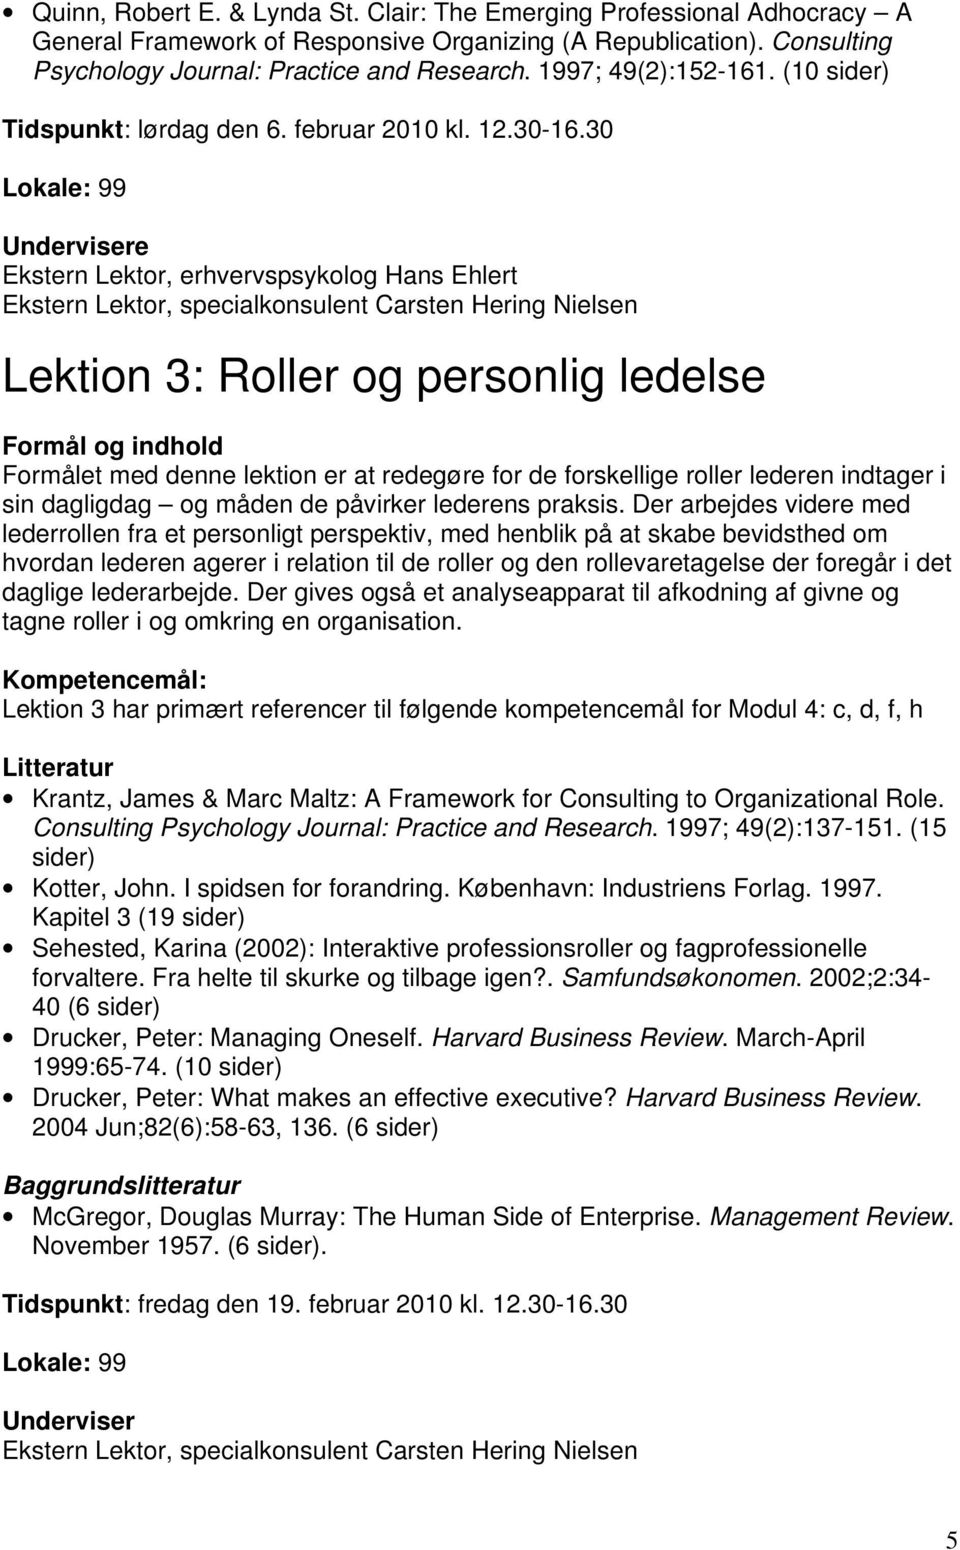 30 Lokale: 99 Undervisere Ekstern Lektor, erhvervspsykolog Hans Ehlert Lektion 3: Roller og personlig ledelse Formålet med denne lektion er at redegøre for de forskellige roller lederen indtager i